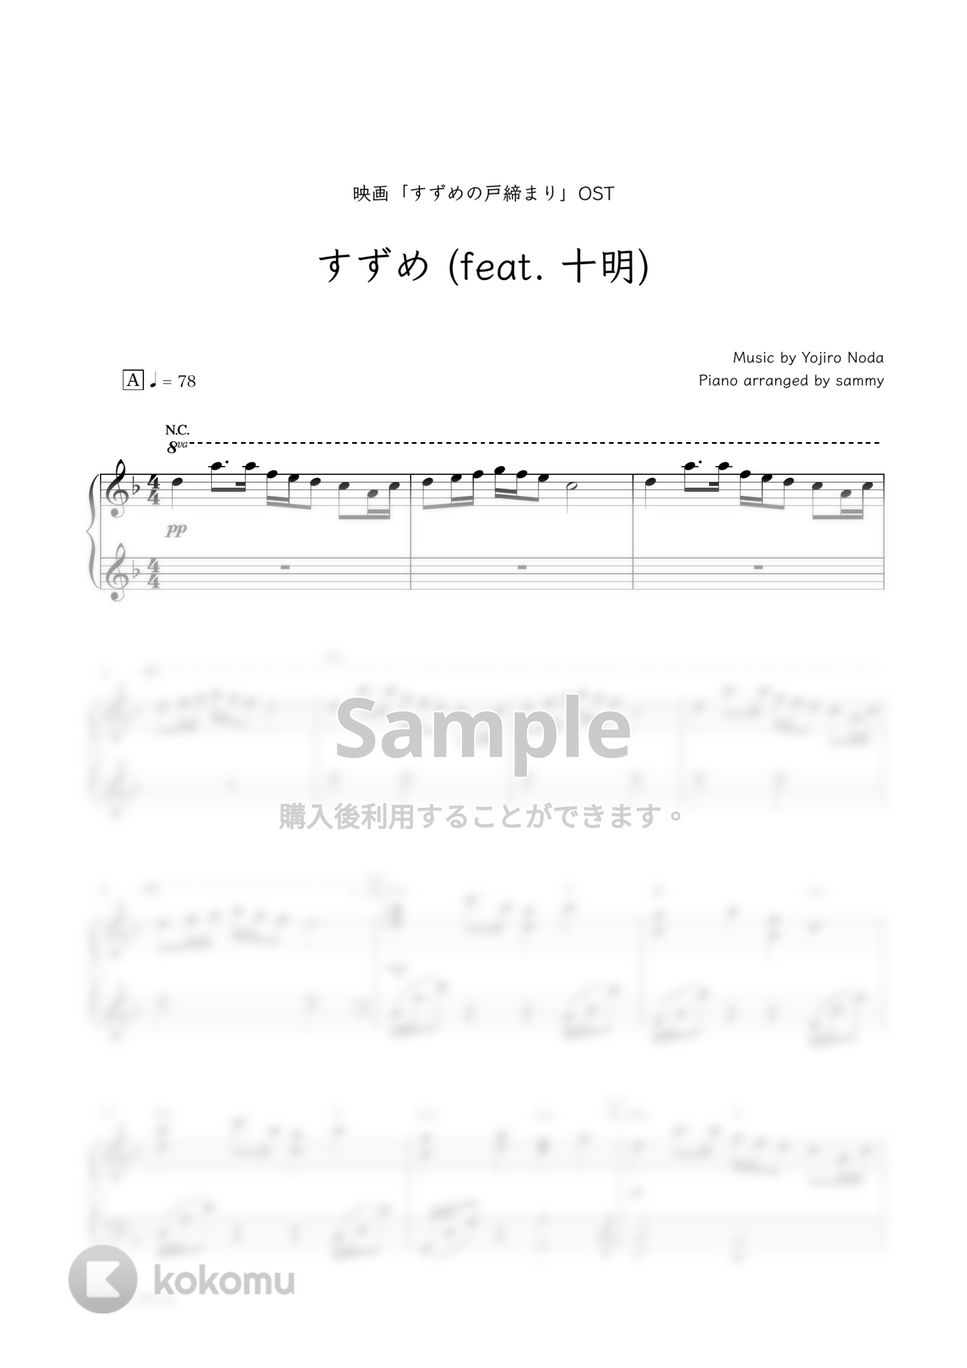 RADWIMPS・映画『すずめの戸締まり』OST - すずめ (feat. 十明) by sammy